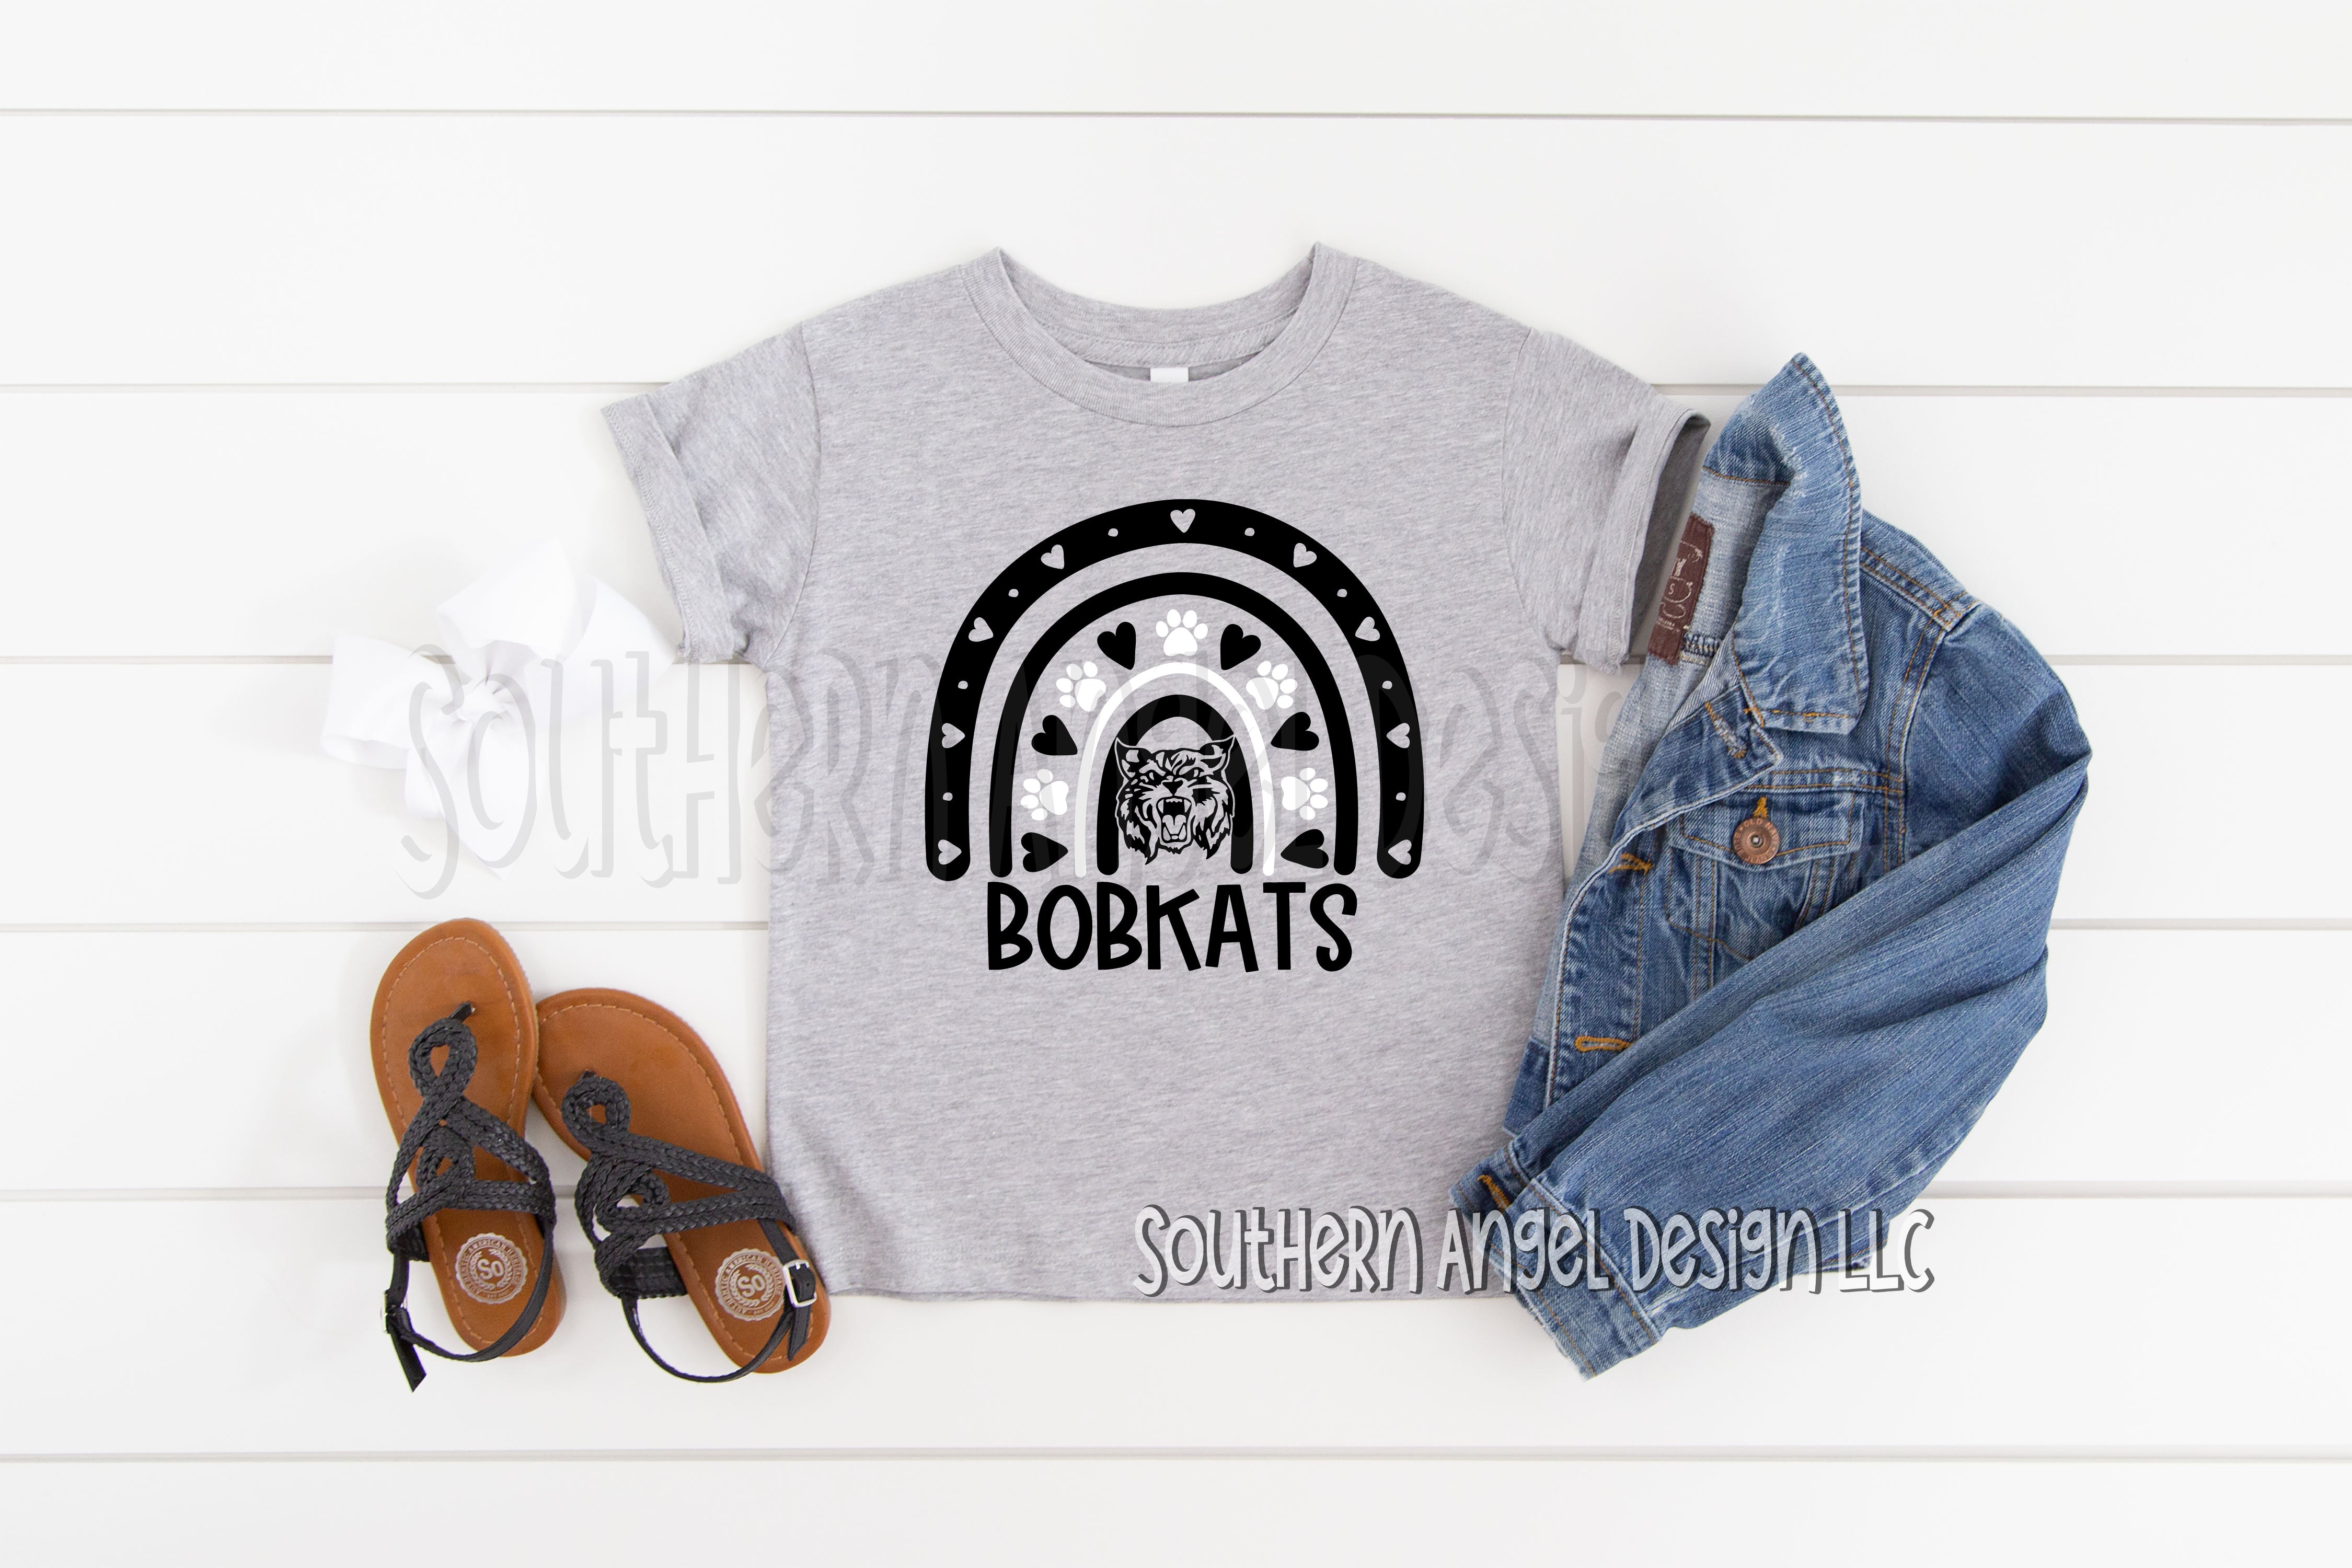 Lavender Bobkats shirt C9866110-630B-49AF-8704-02C2C47CAD08.jpg bobkats-shirt School